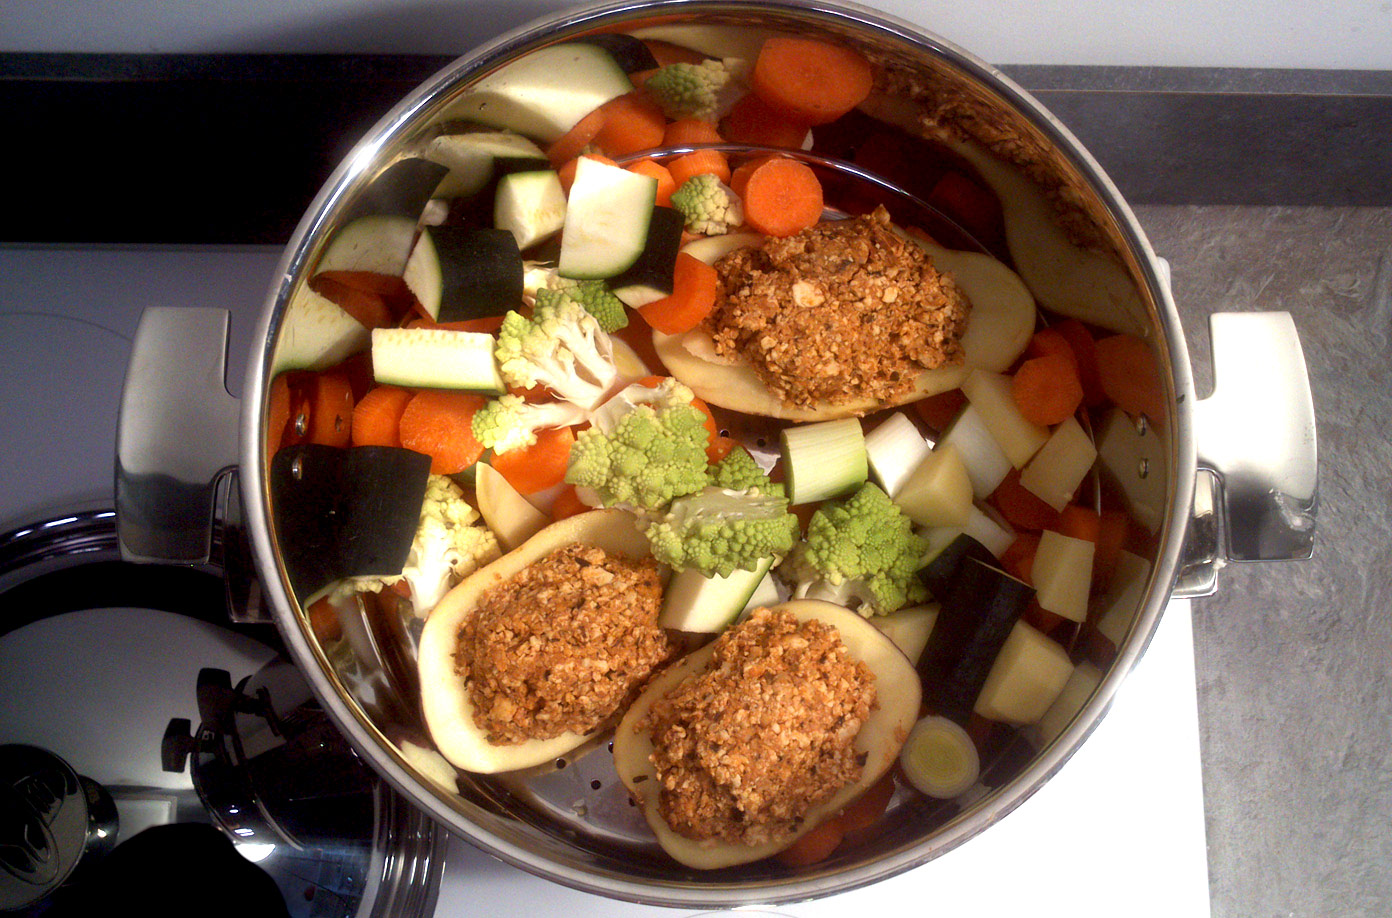 cuisson de legumes bio a la vapeur douce